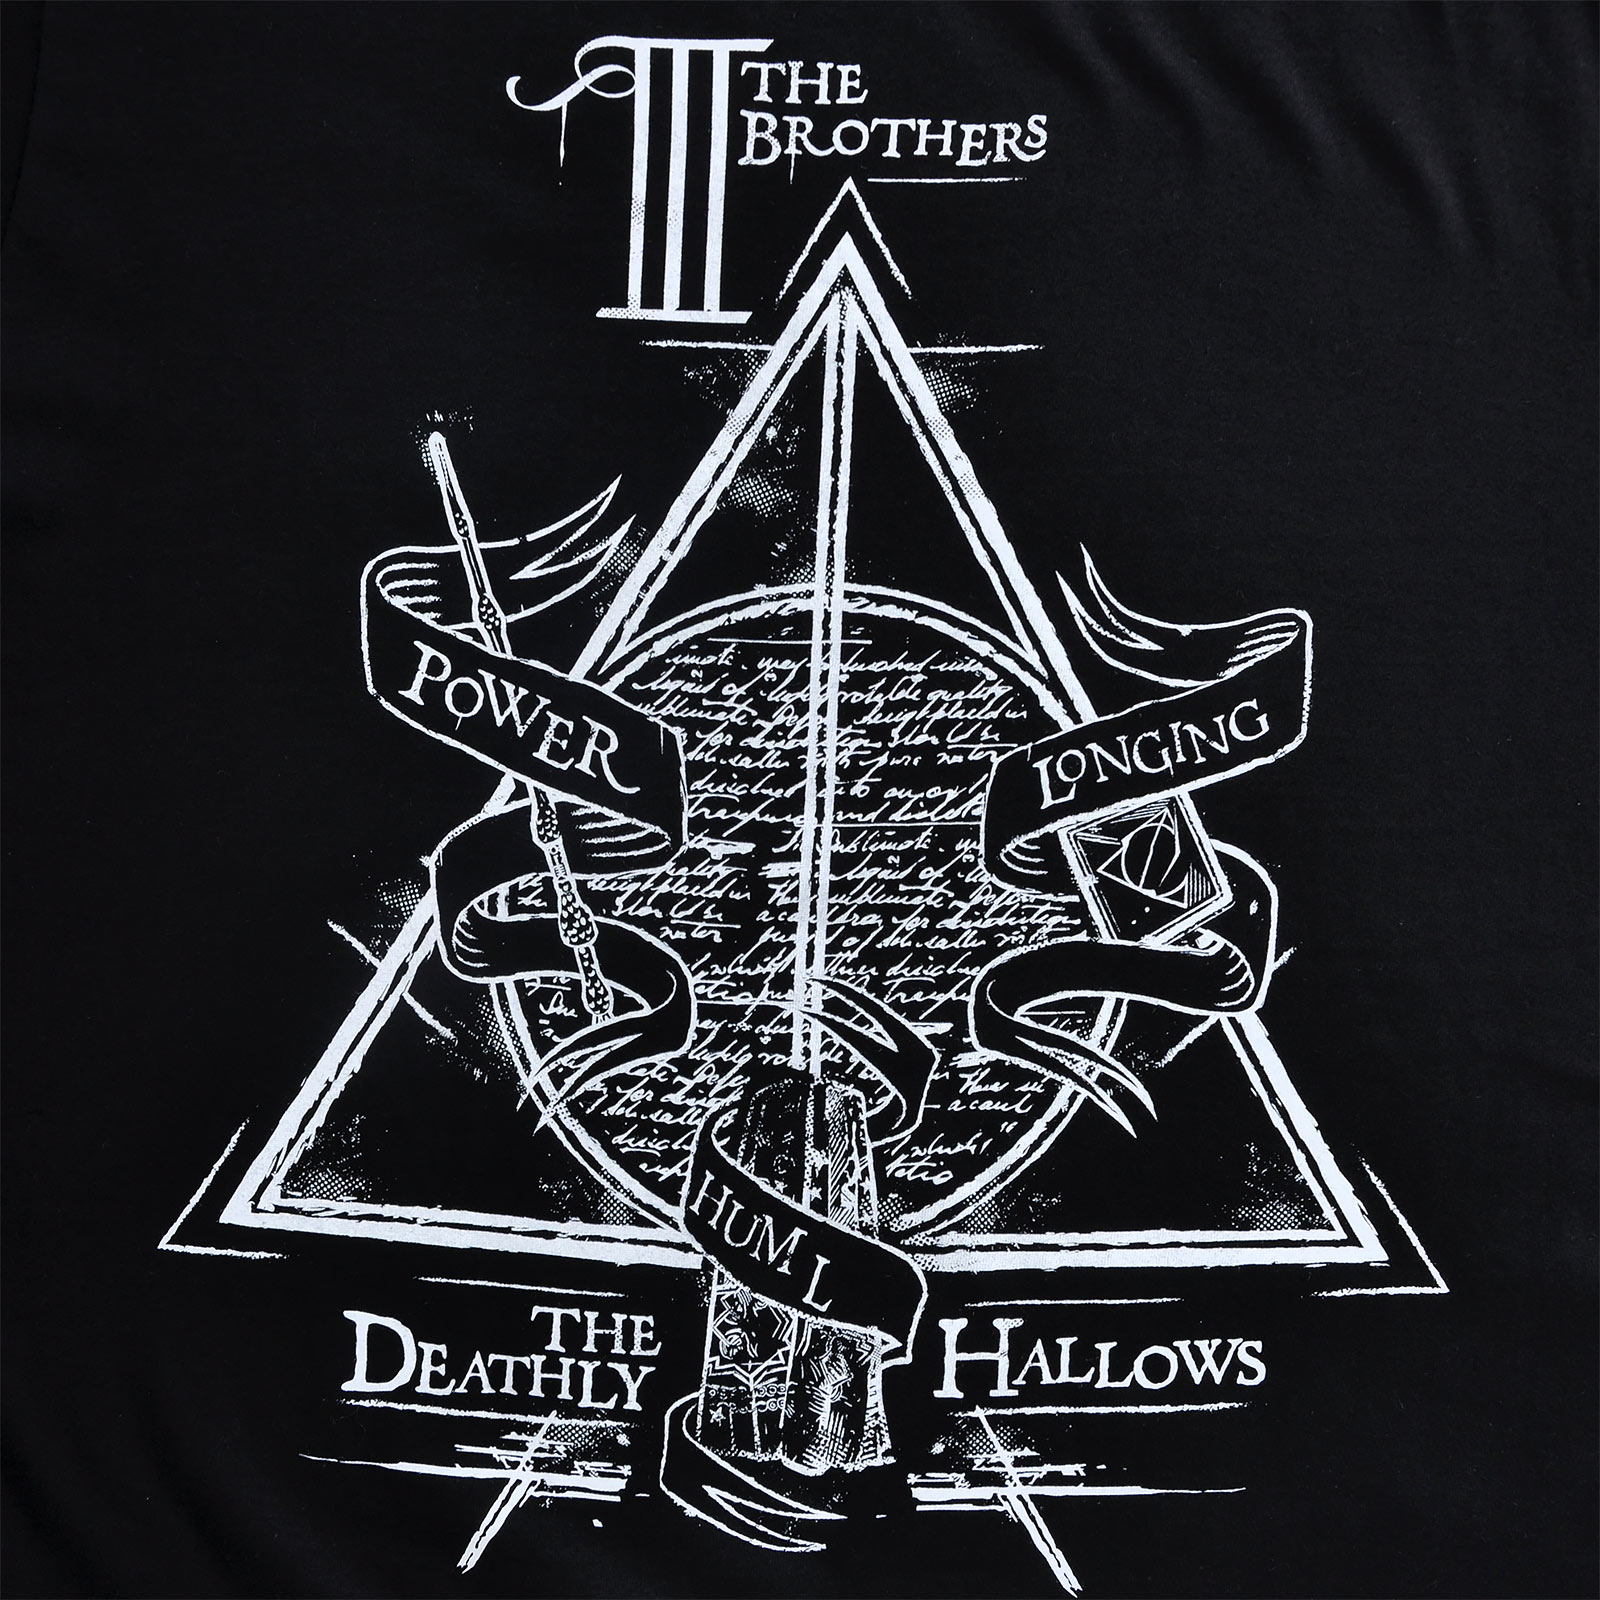 Harry Potter - De drie broers T-shirt